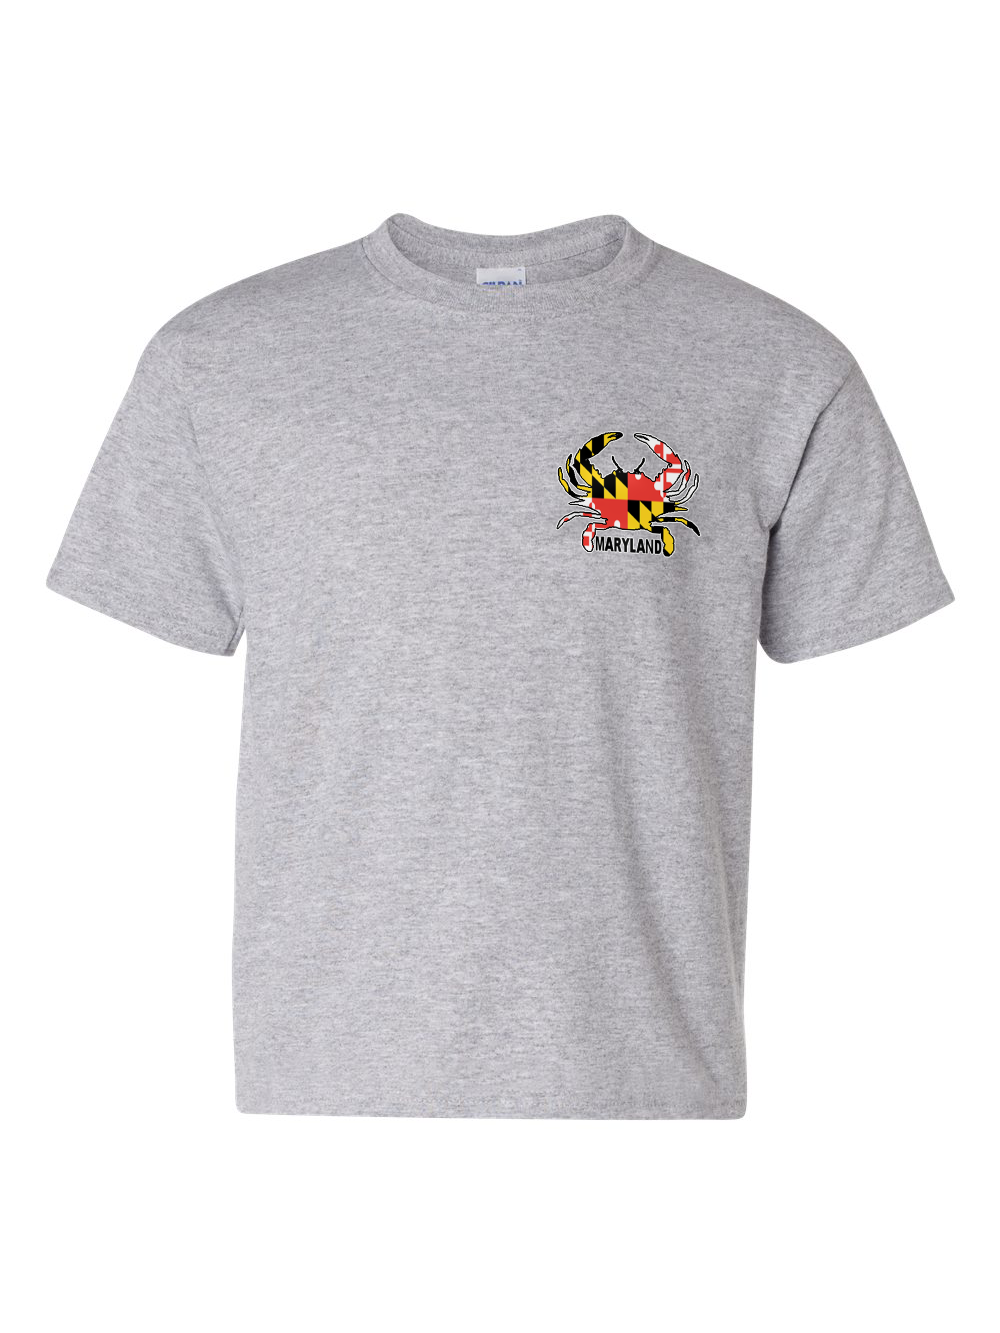 maryland-gifts-small-crab-maryland-flag-t-shirt-grey